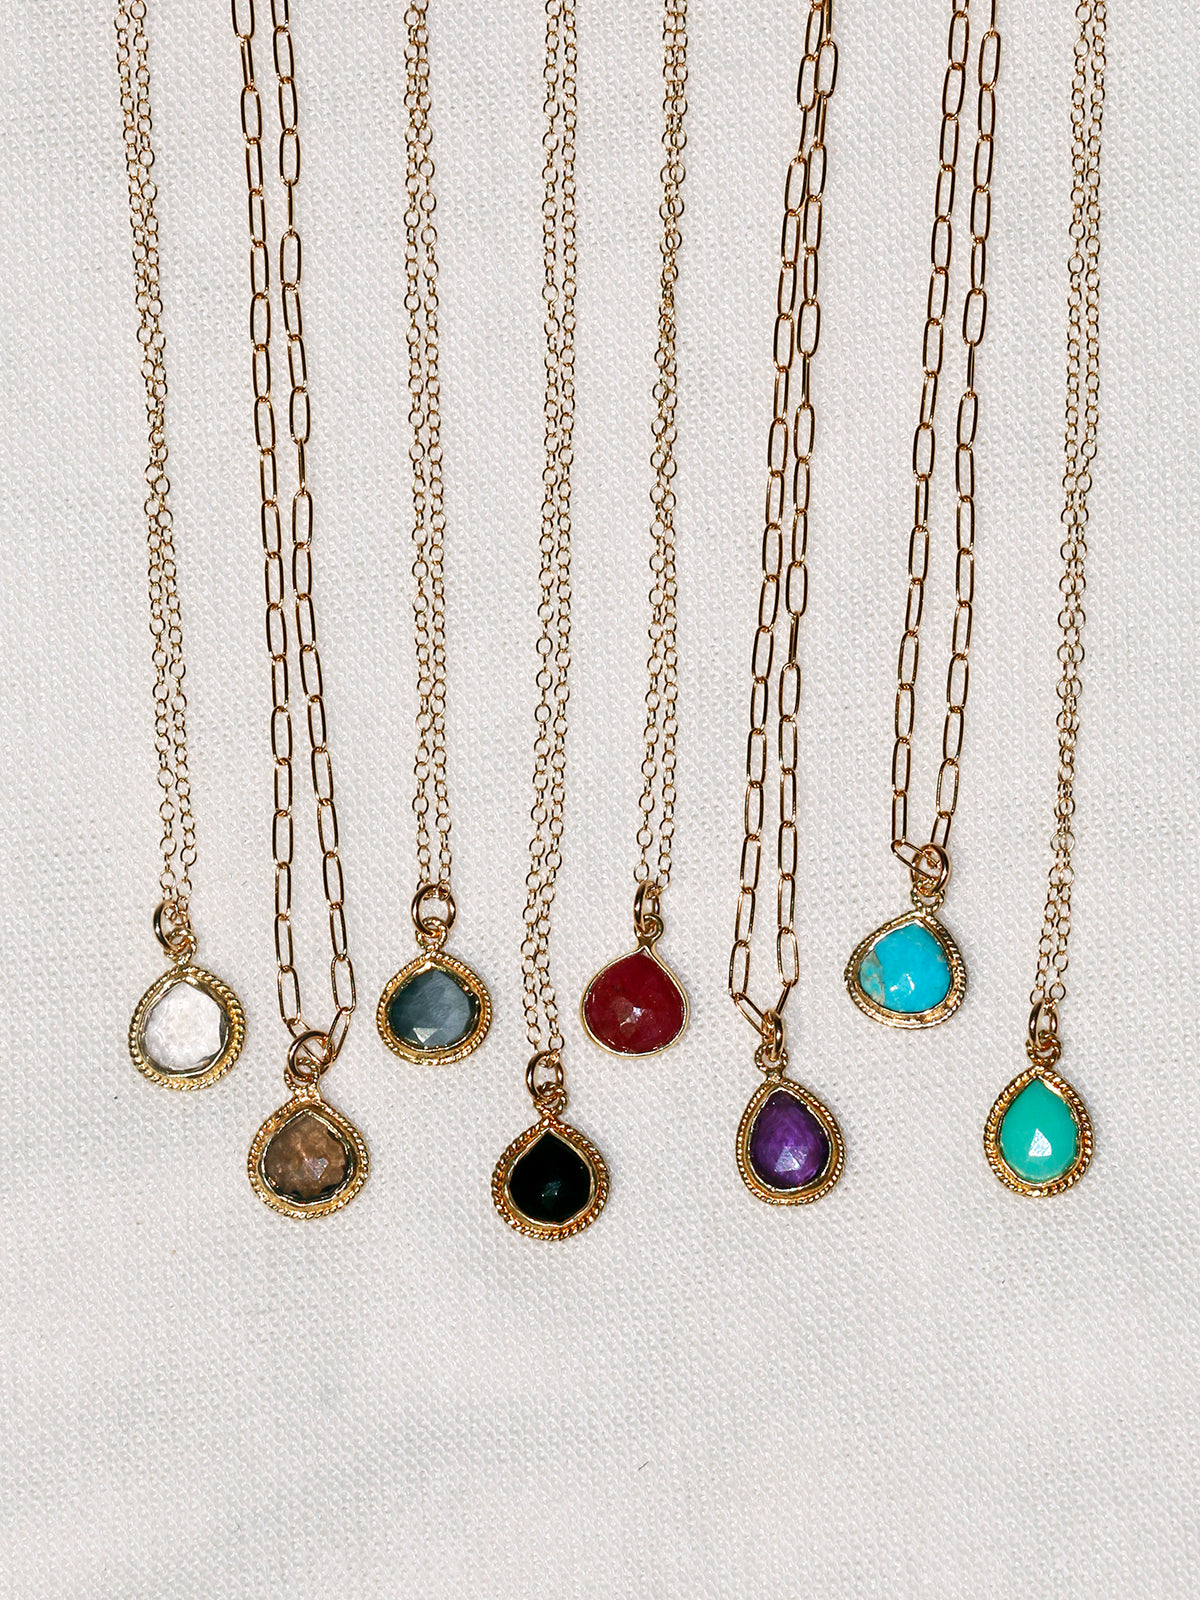 Susan Rifkin Gold Ornate Pendant - Teardrop (Multiple Colors!)